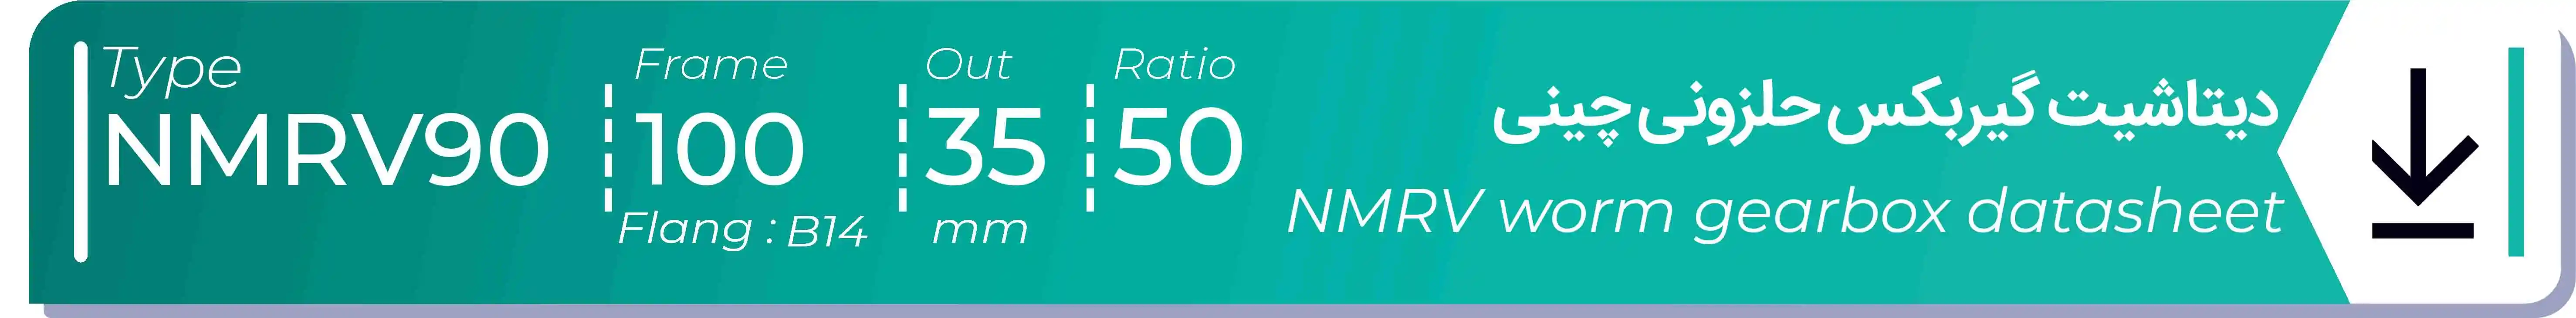  دیتاشیت و مشخصات فنی گیربکس حلزونی چینی   NMRV90  -  با خروجی 35- میلی متر و نسبت50 و فریم 100